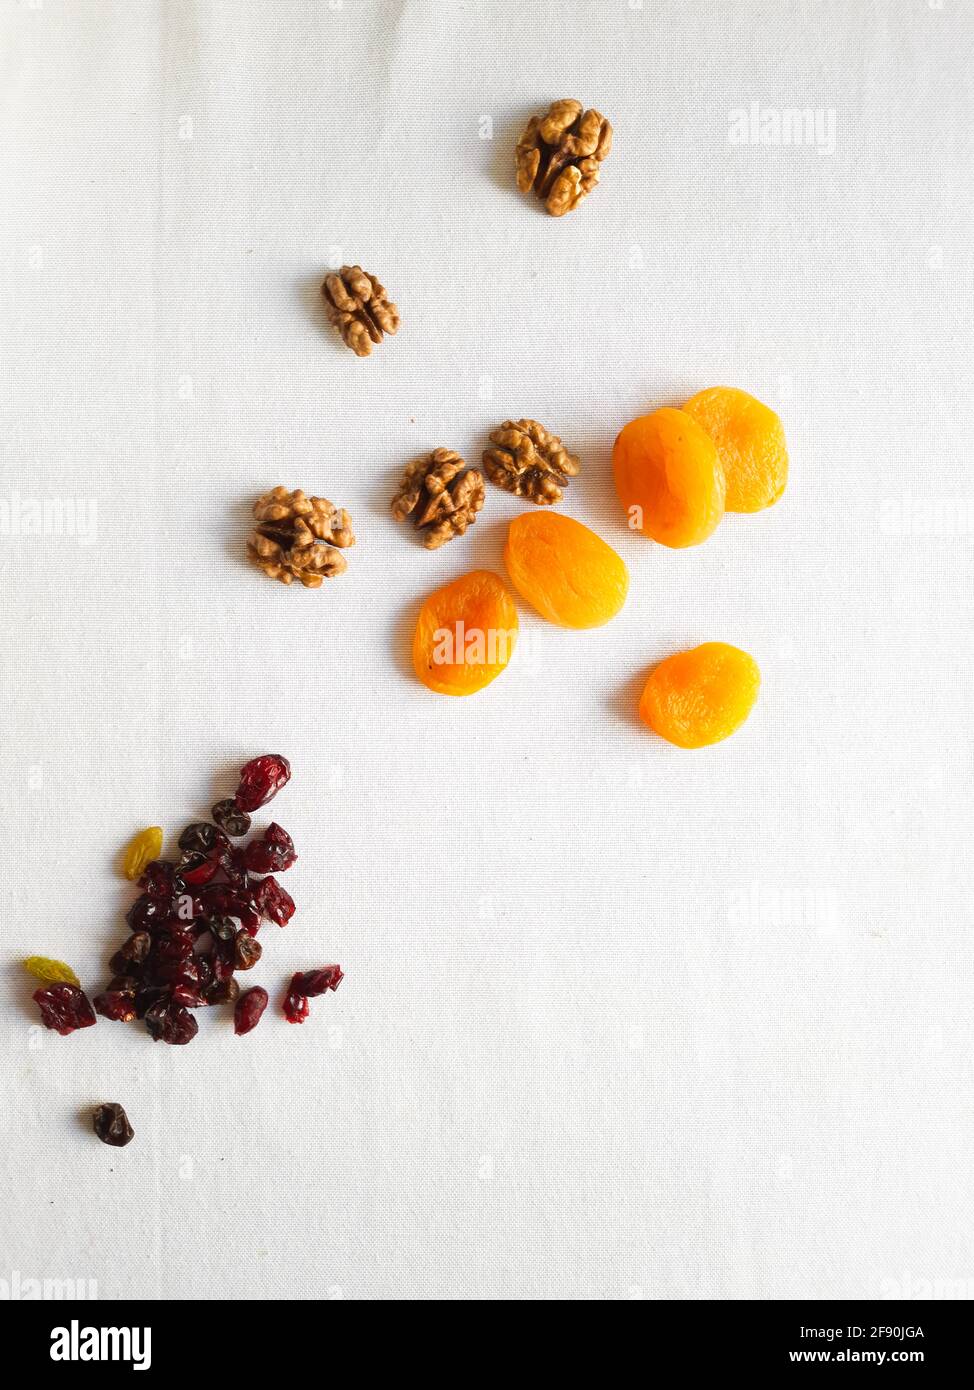 Nueces, pasas, arándanos secos y albaricoques secos sobre mesa blanca Foto de stock